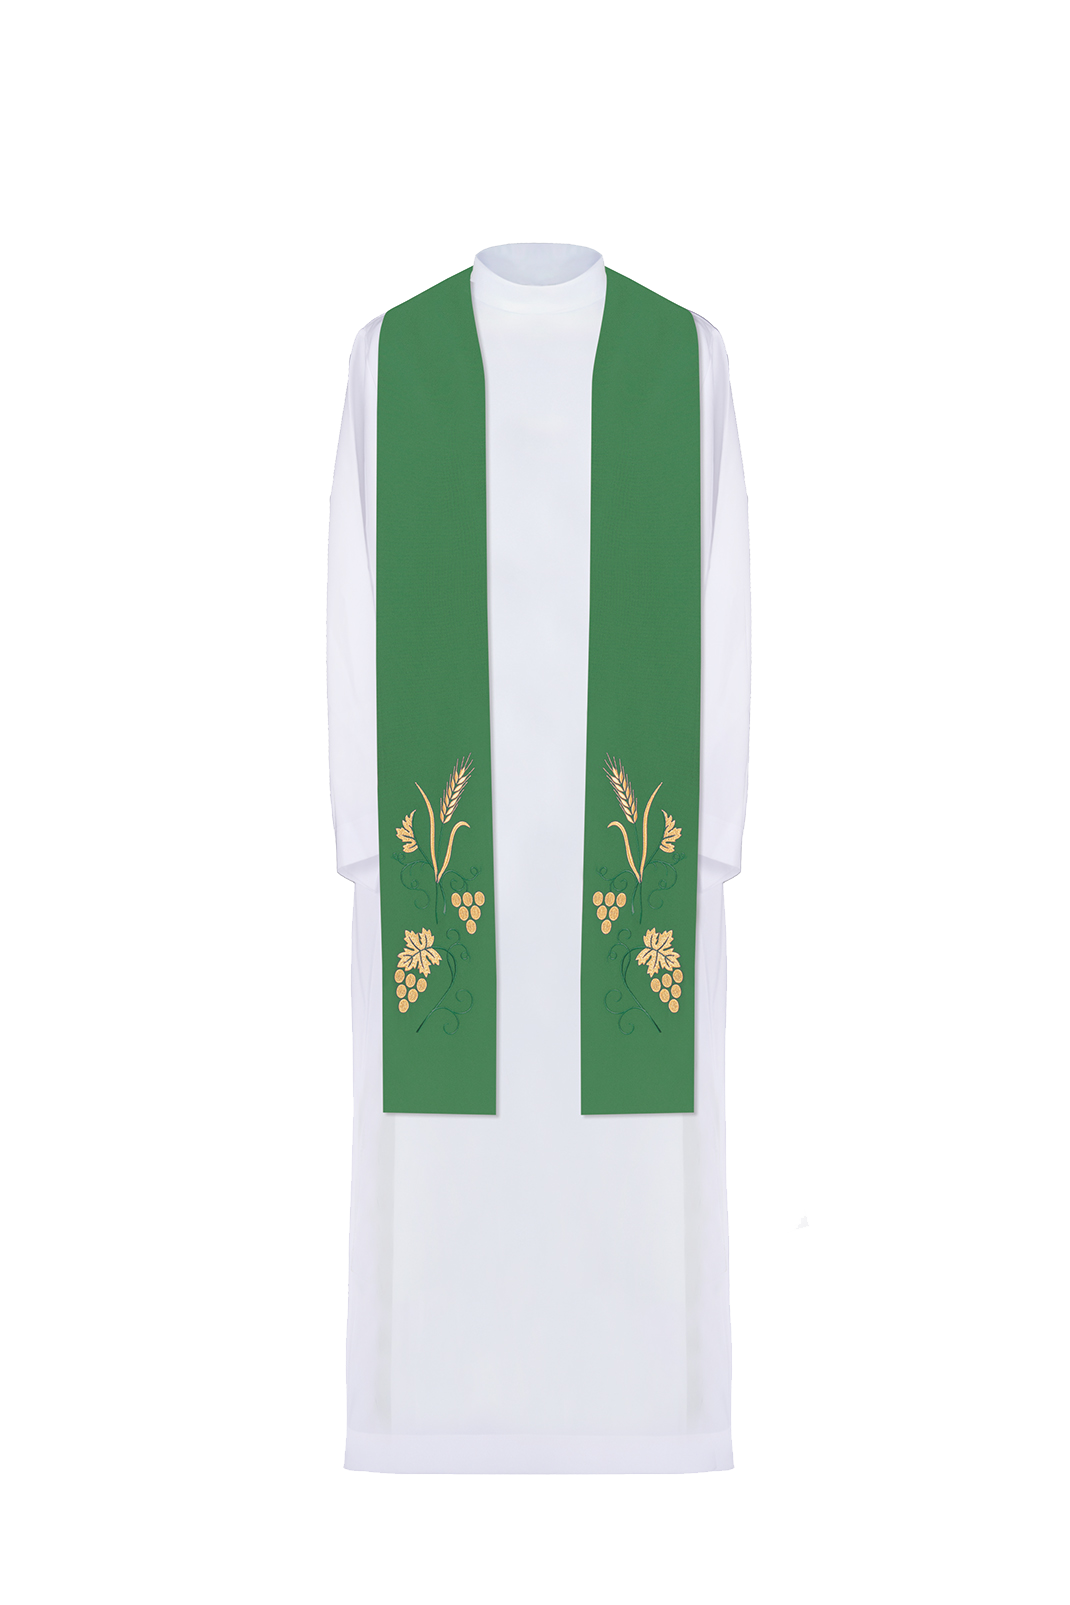 Stuła kapłańska haftowana winogrona i kłosy w kolorze zielonym